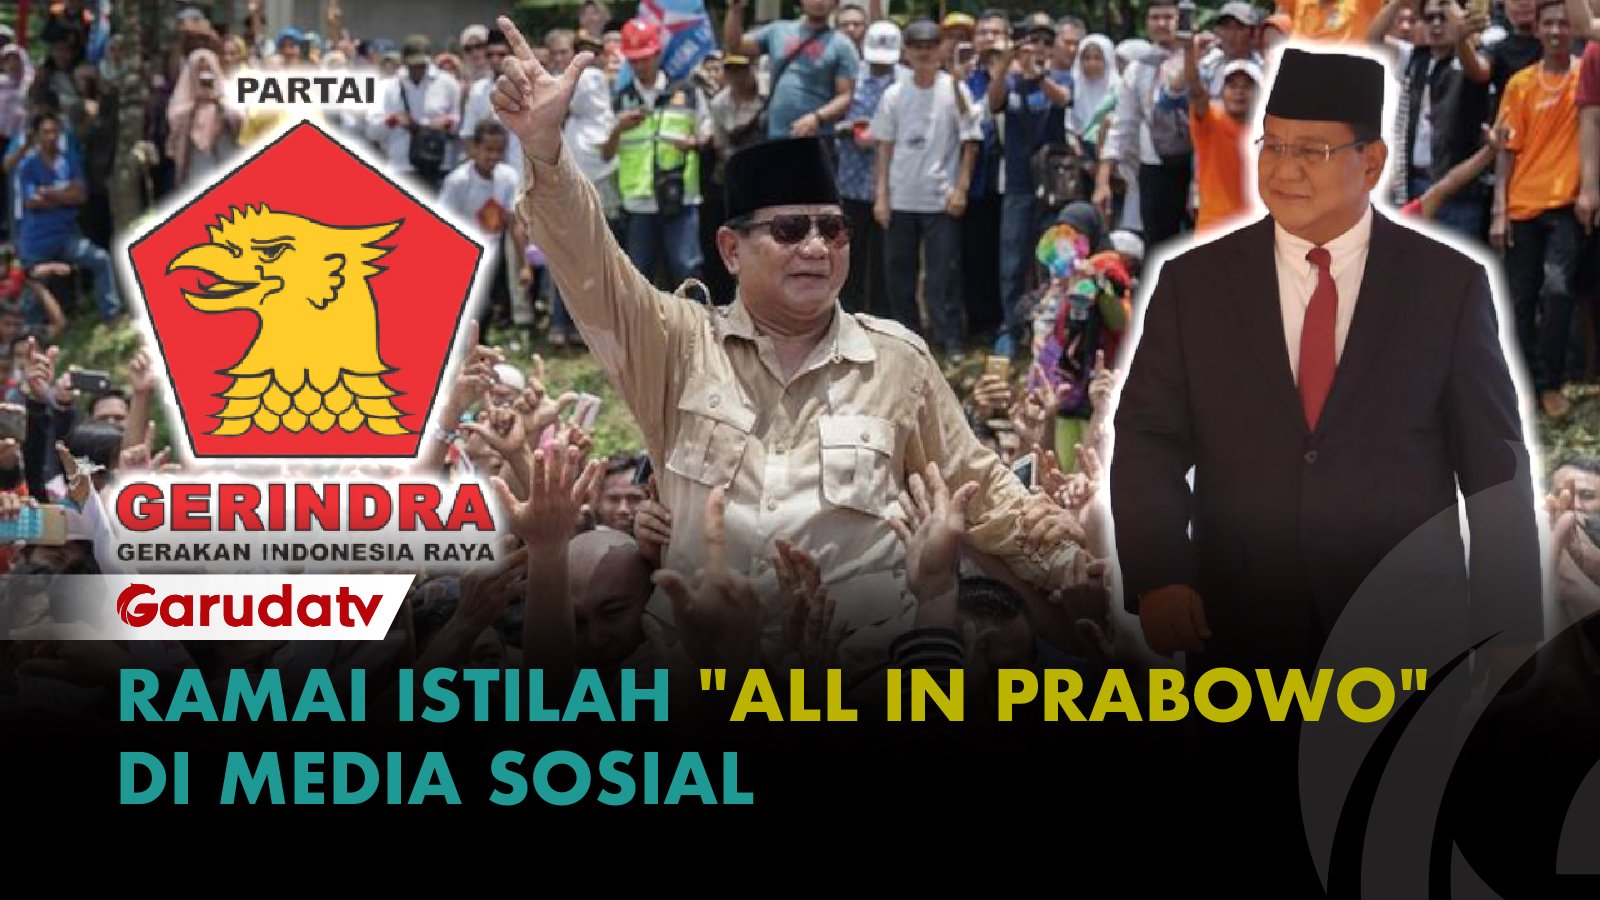 Survei SMRC: Prabowo Masih Kokoh di Puncak Elektabilitas dengan Skor 34,5 Persen